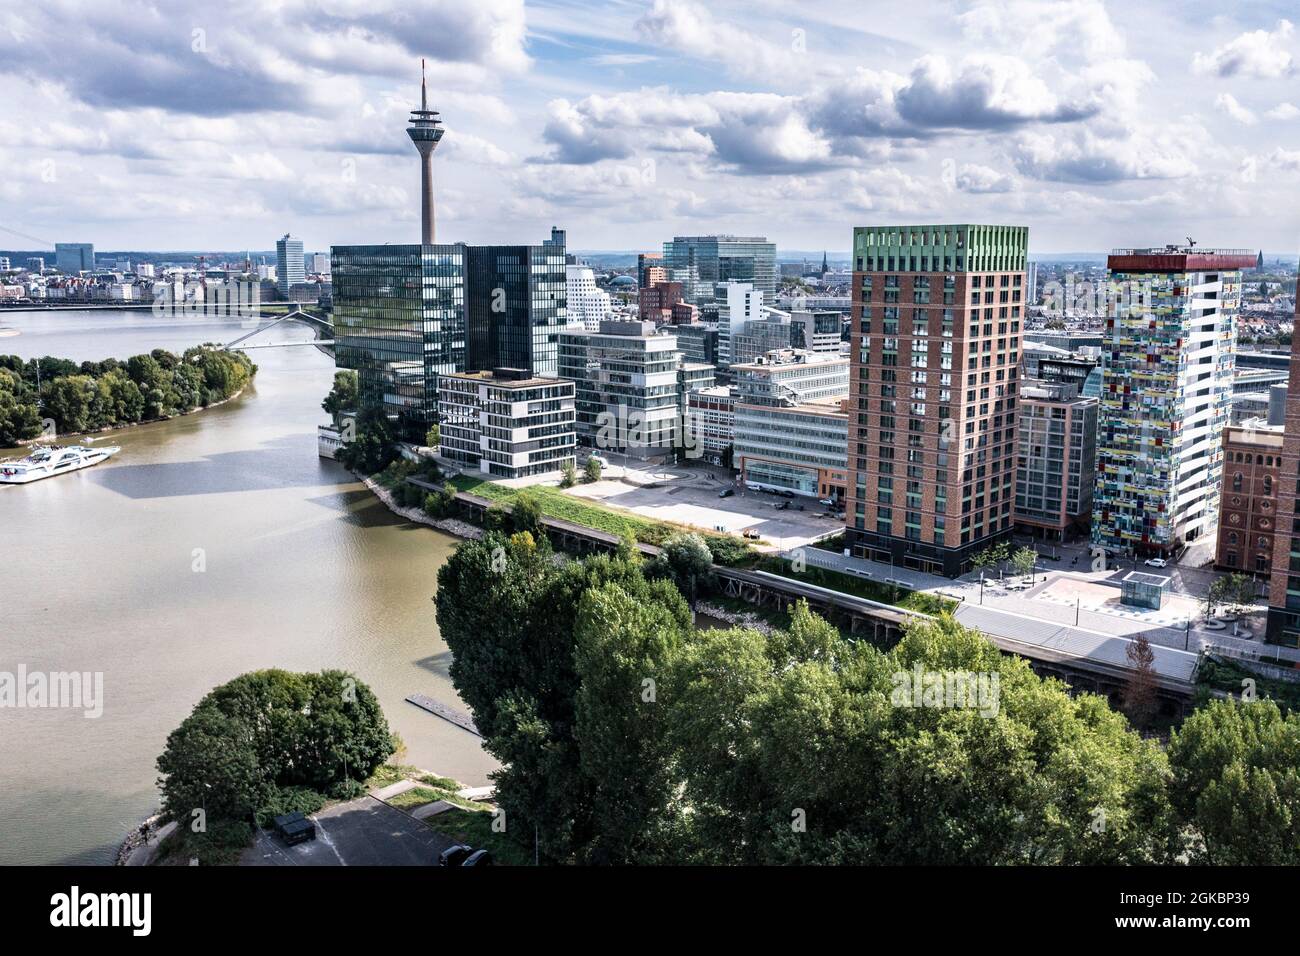 Medienhafen en Düsseldorf mit dem Rhein. Foto de stock